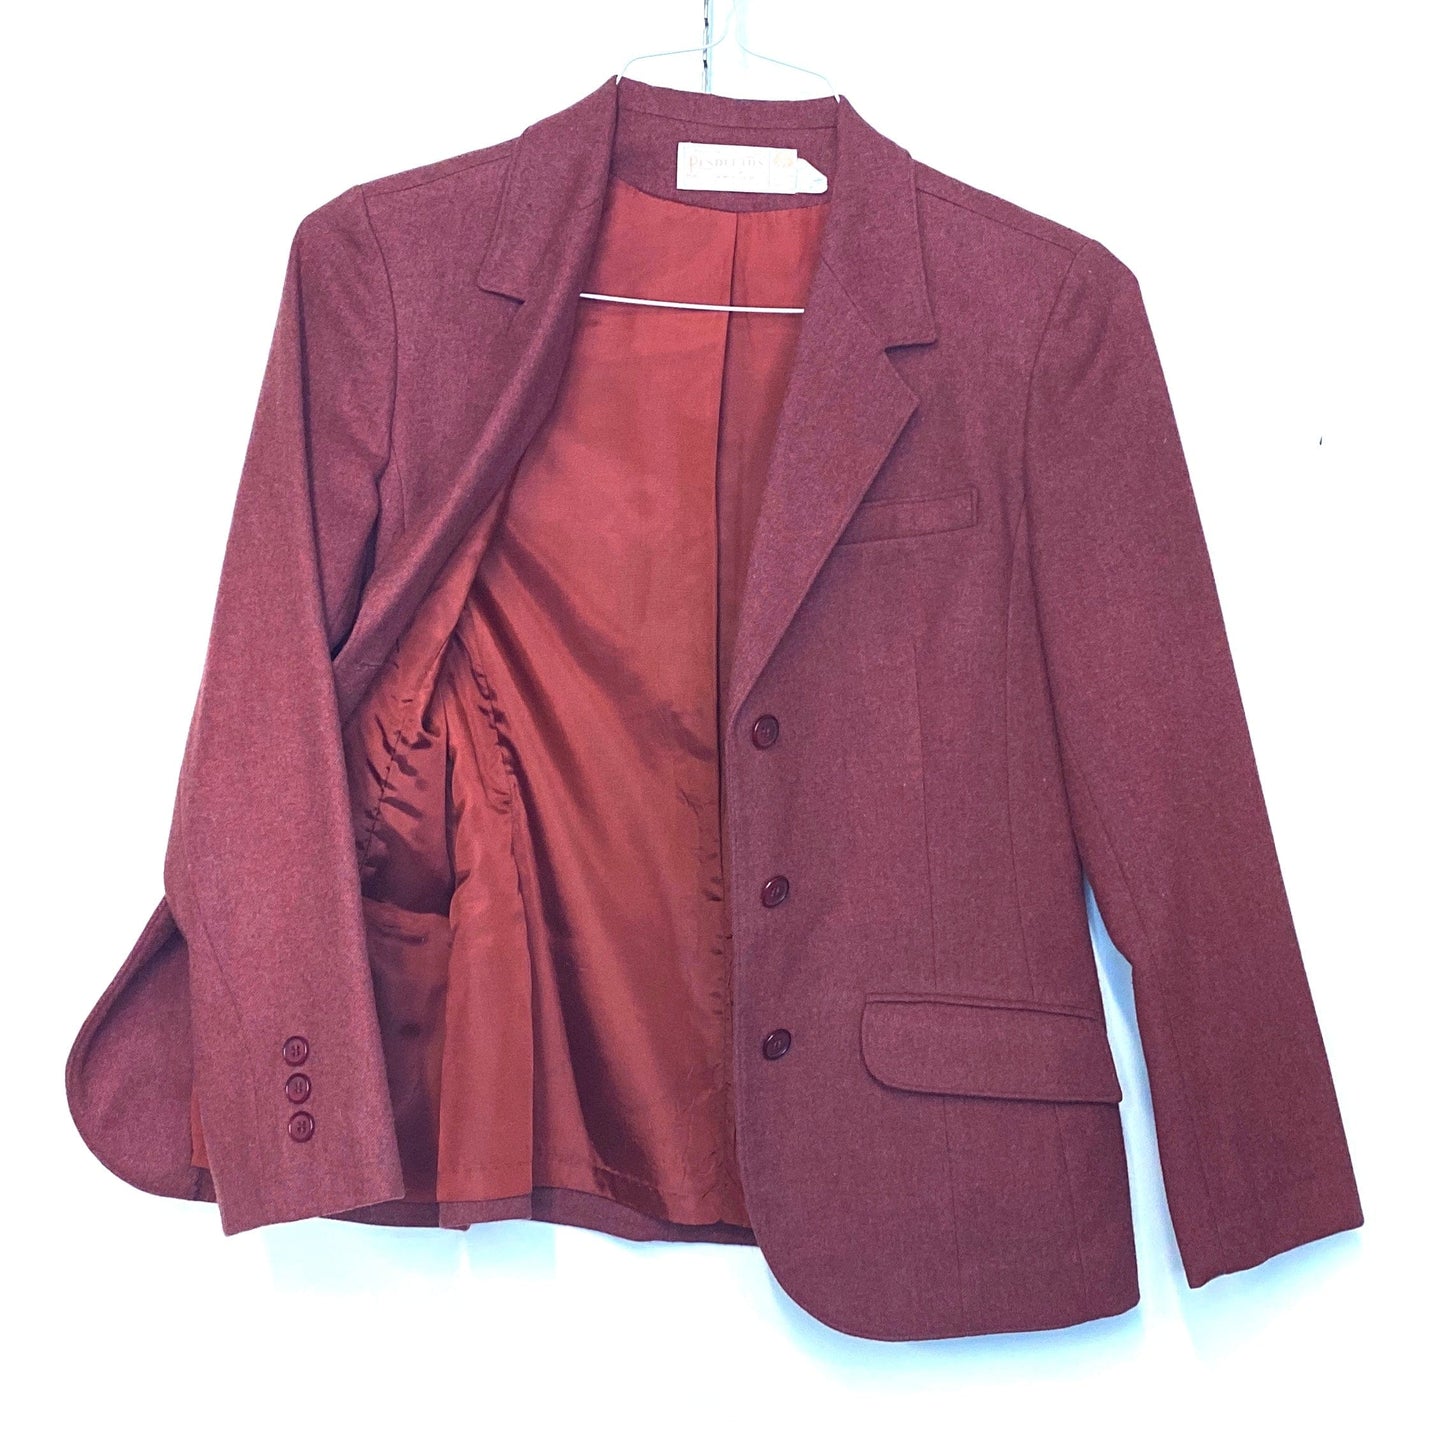 Pendleton Womens Size 12 100% Wool Blazer Jacket Burgundy Brown Short